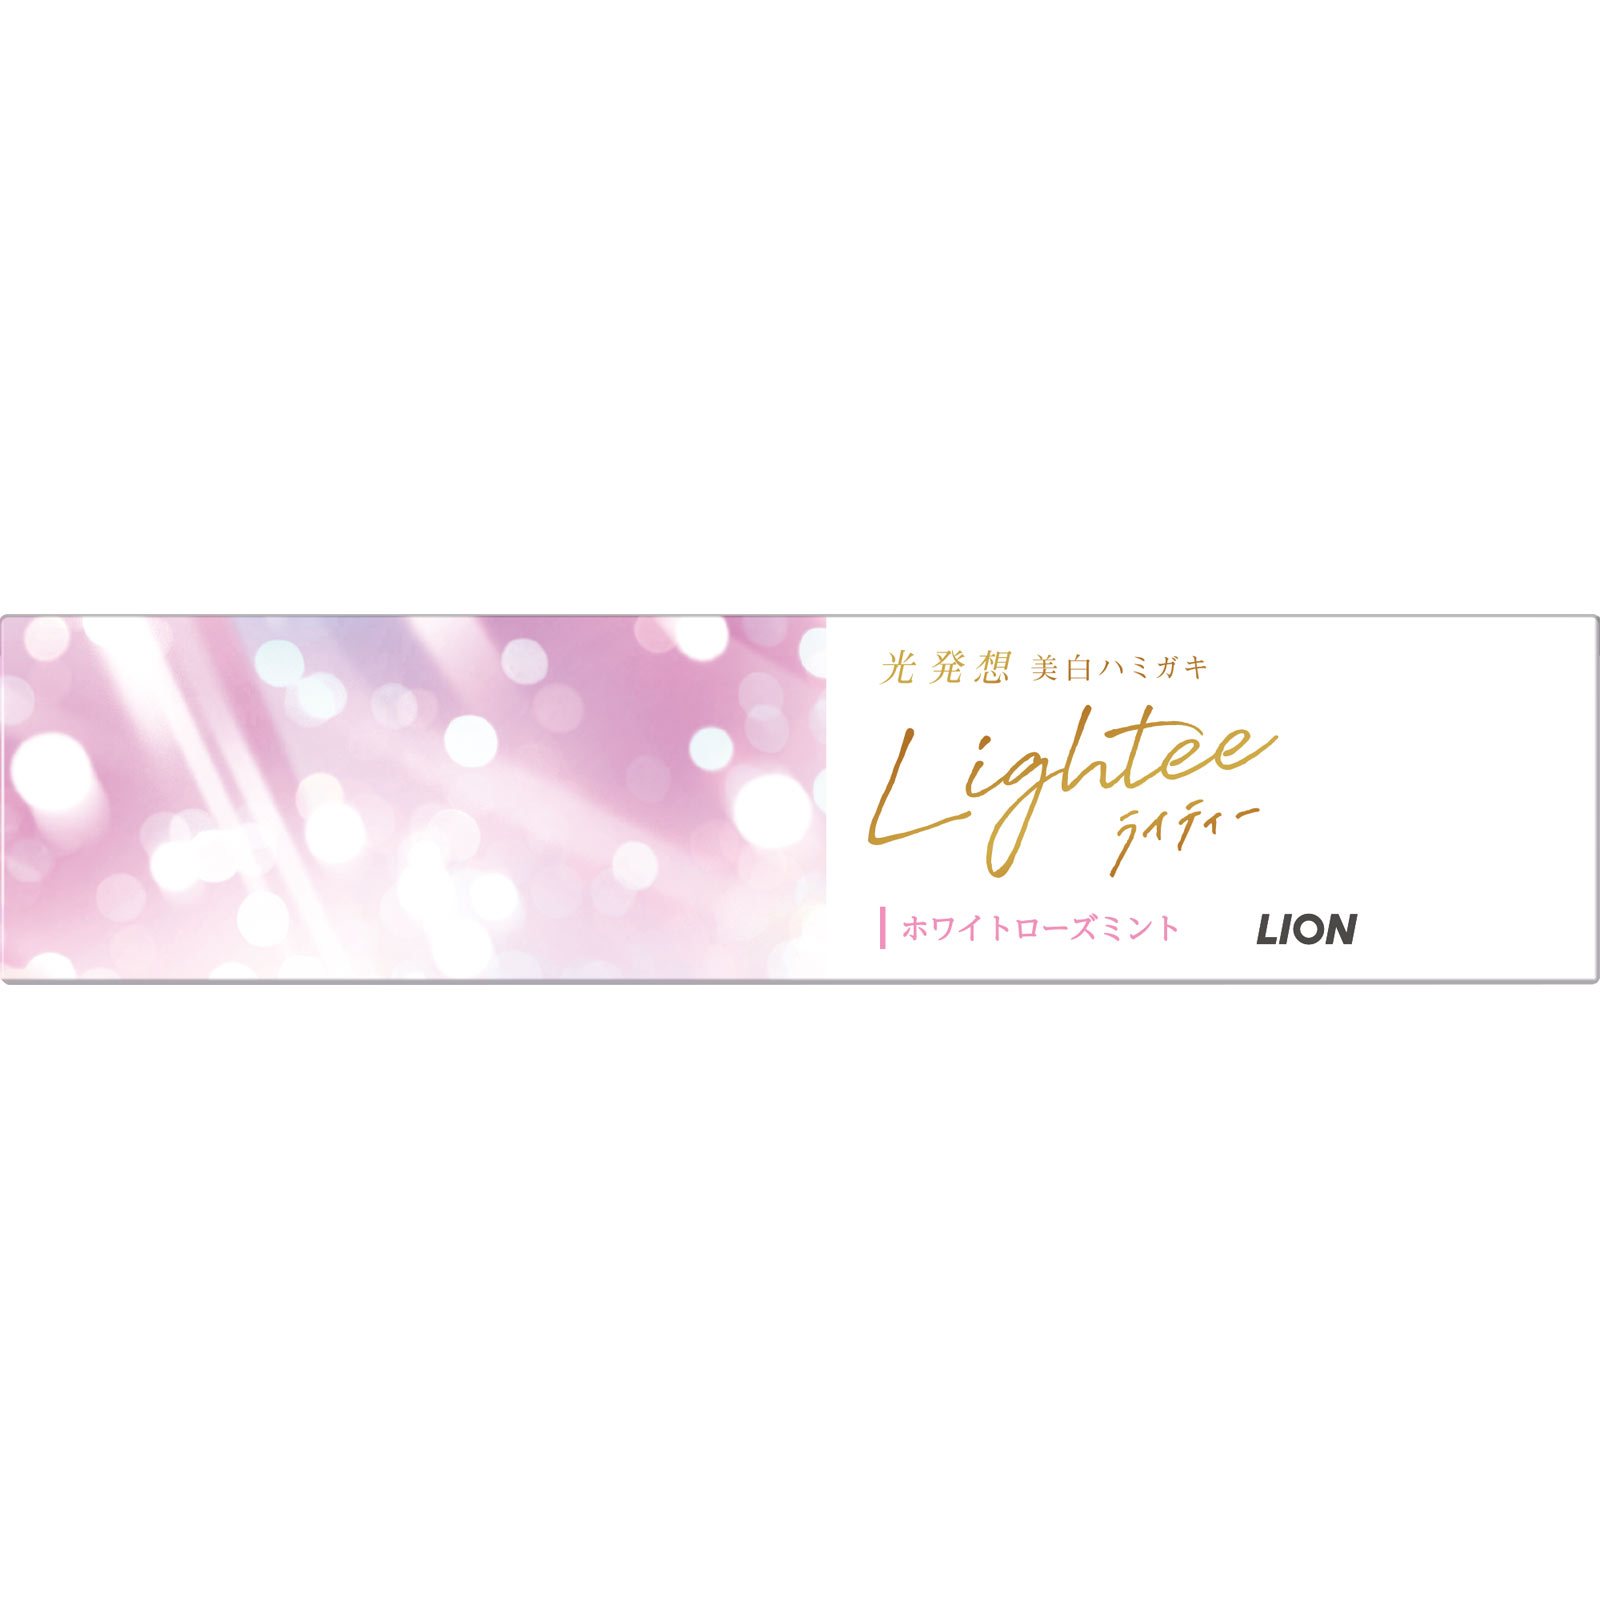 Lightee (ライティー) ハミガキ ホワイトローズミント 増量品